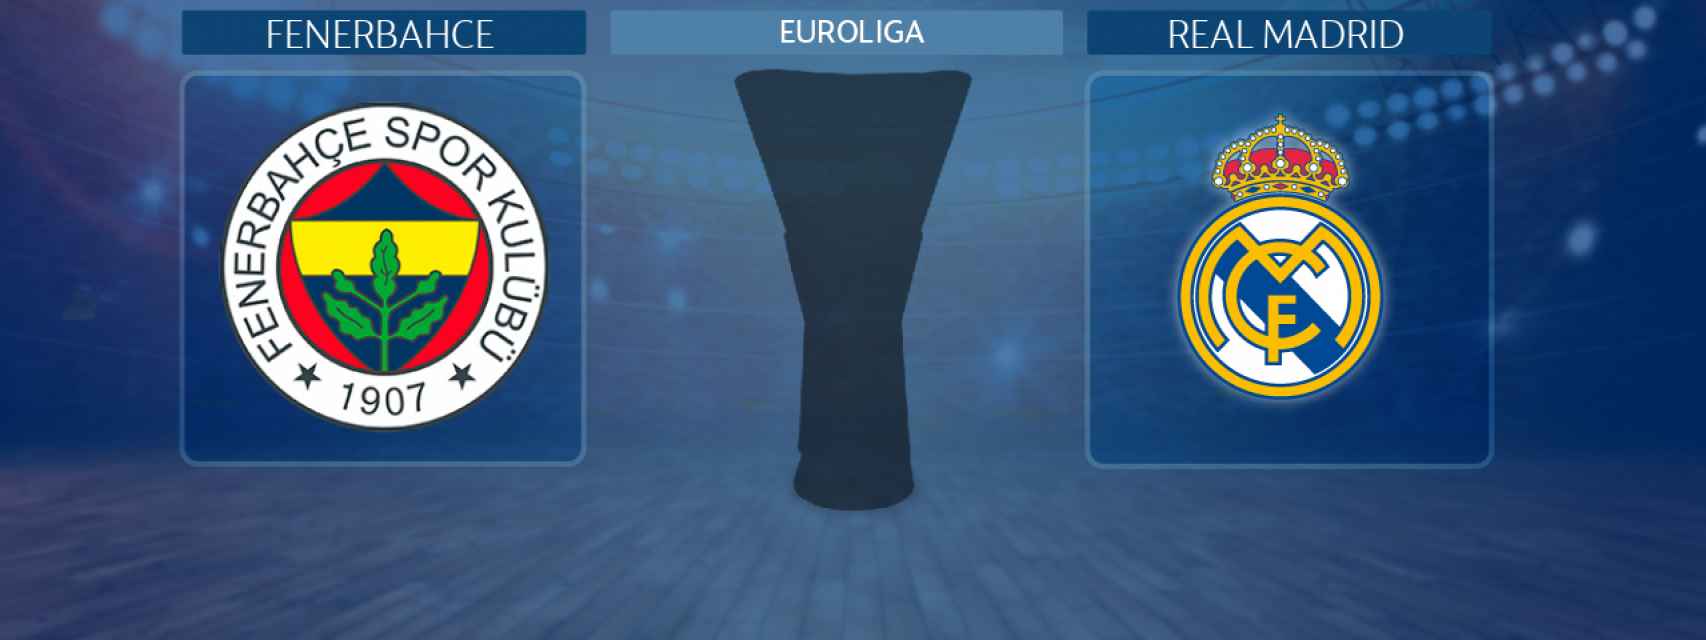 Fenerbahce - Real Madrid, partido de la Euroliga